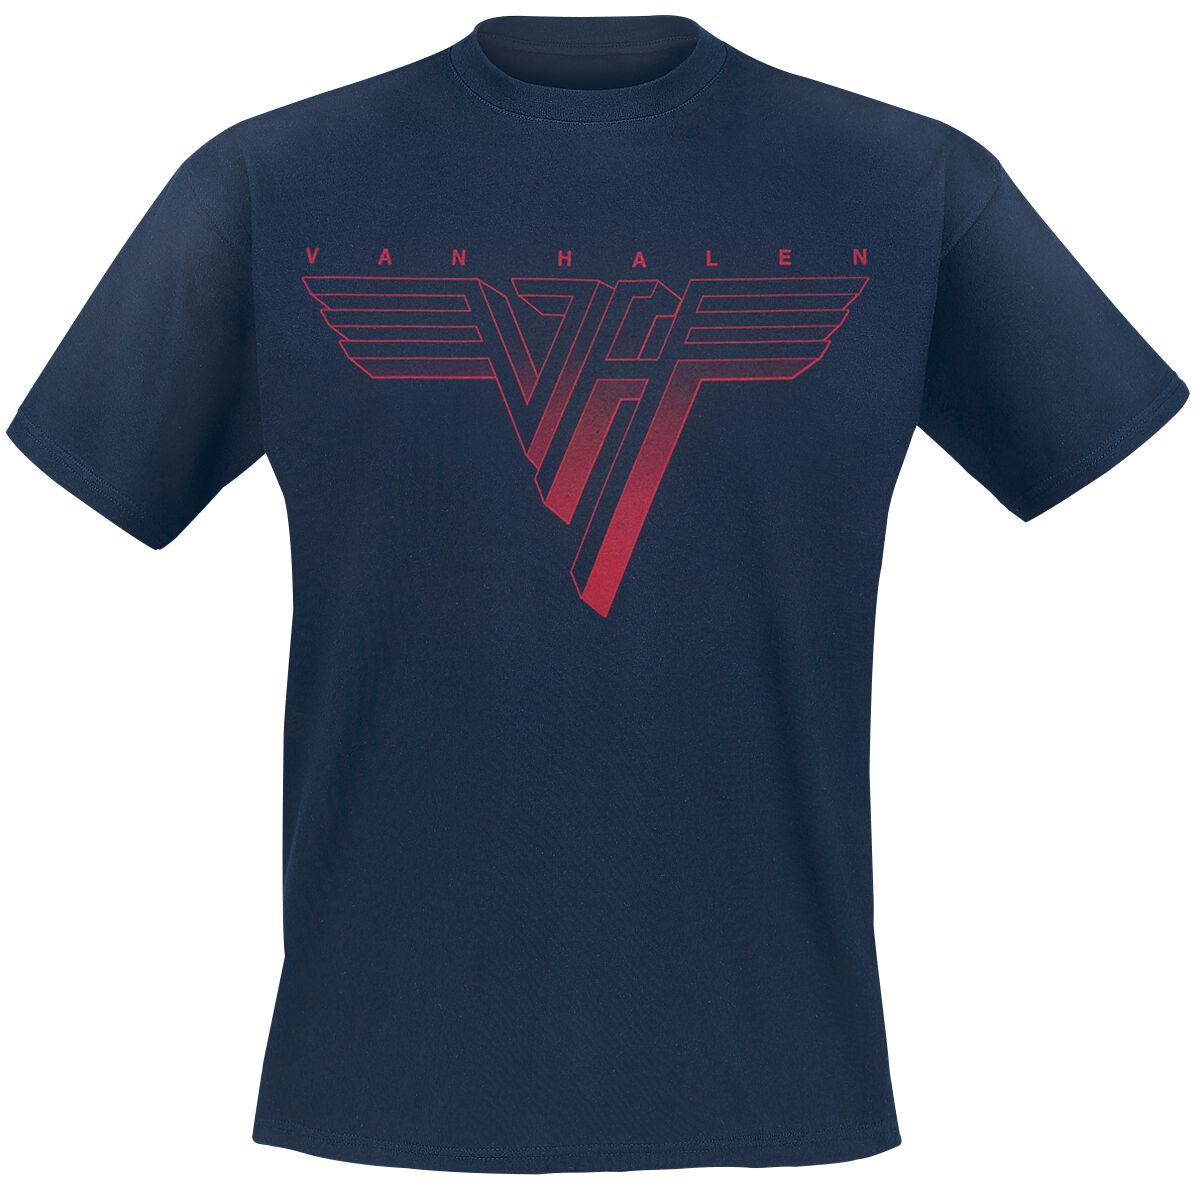 Image of Van Halen Classic Red Logo T-Shirt navy